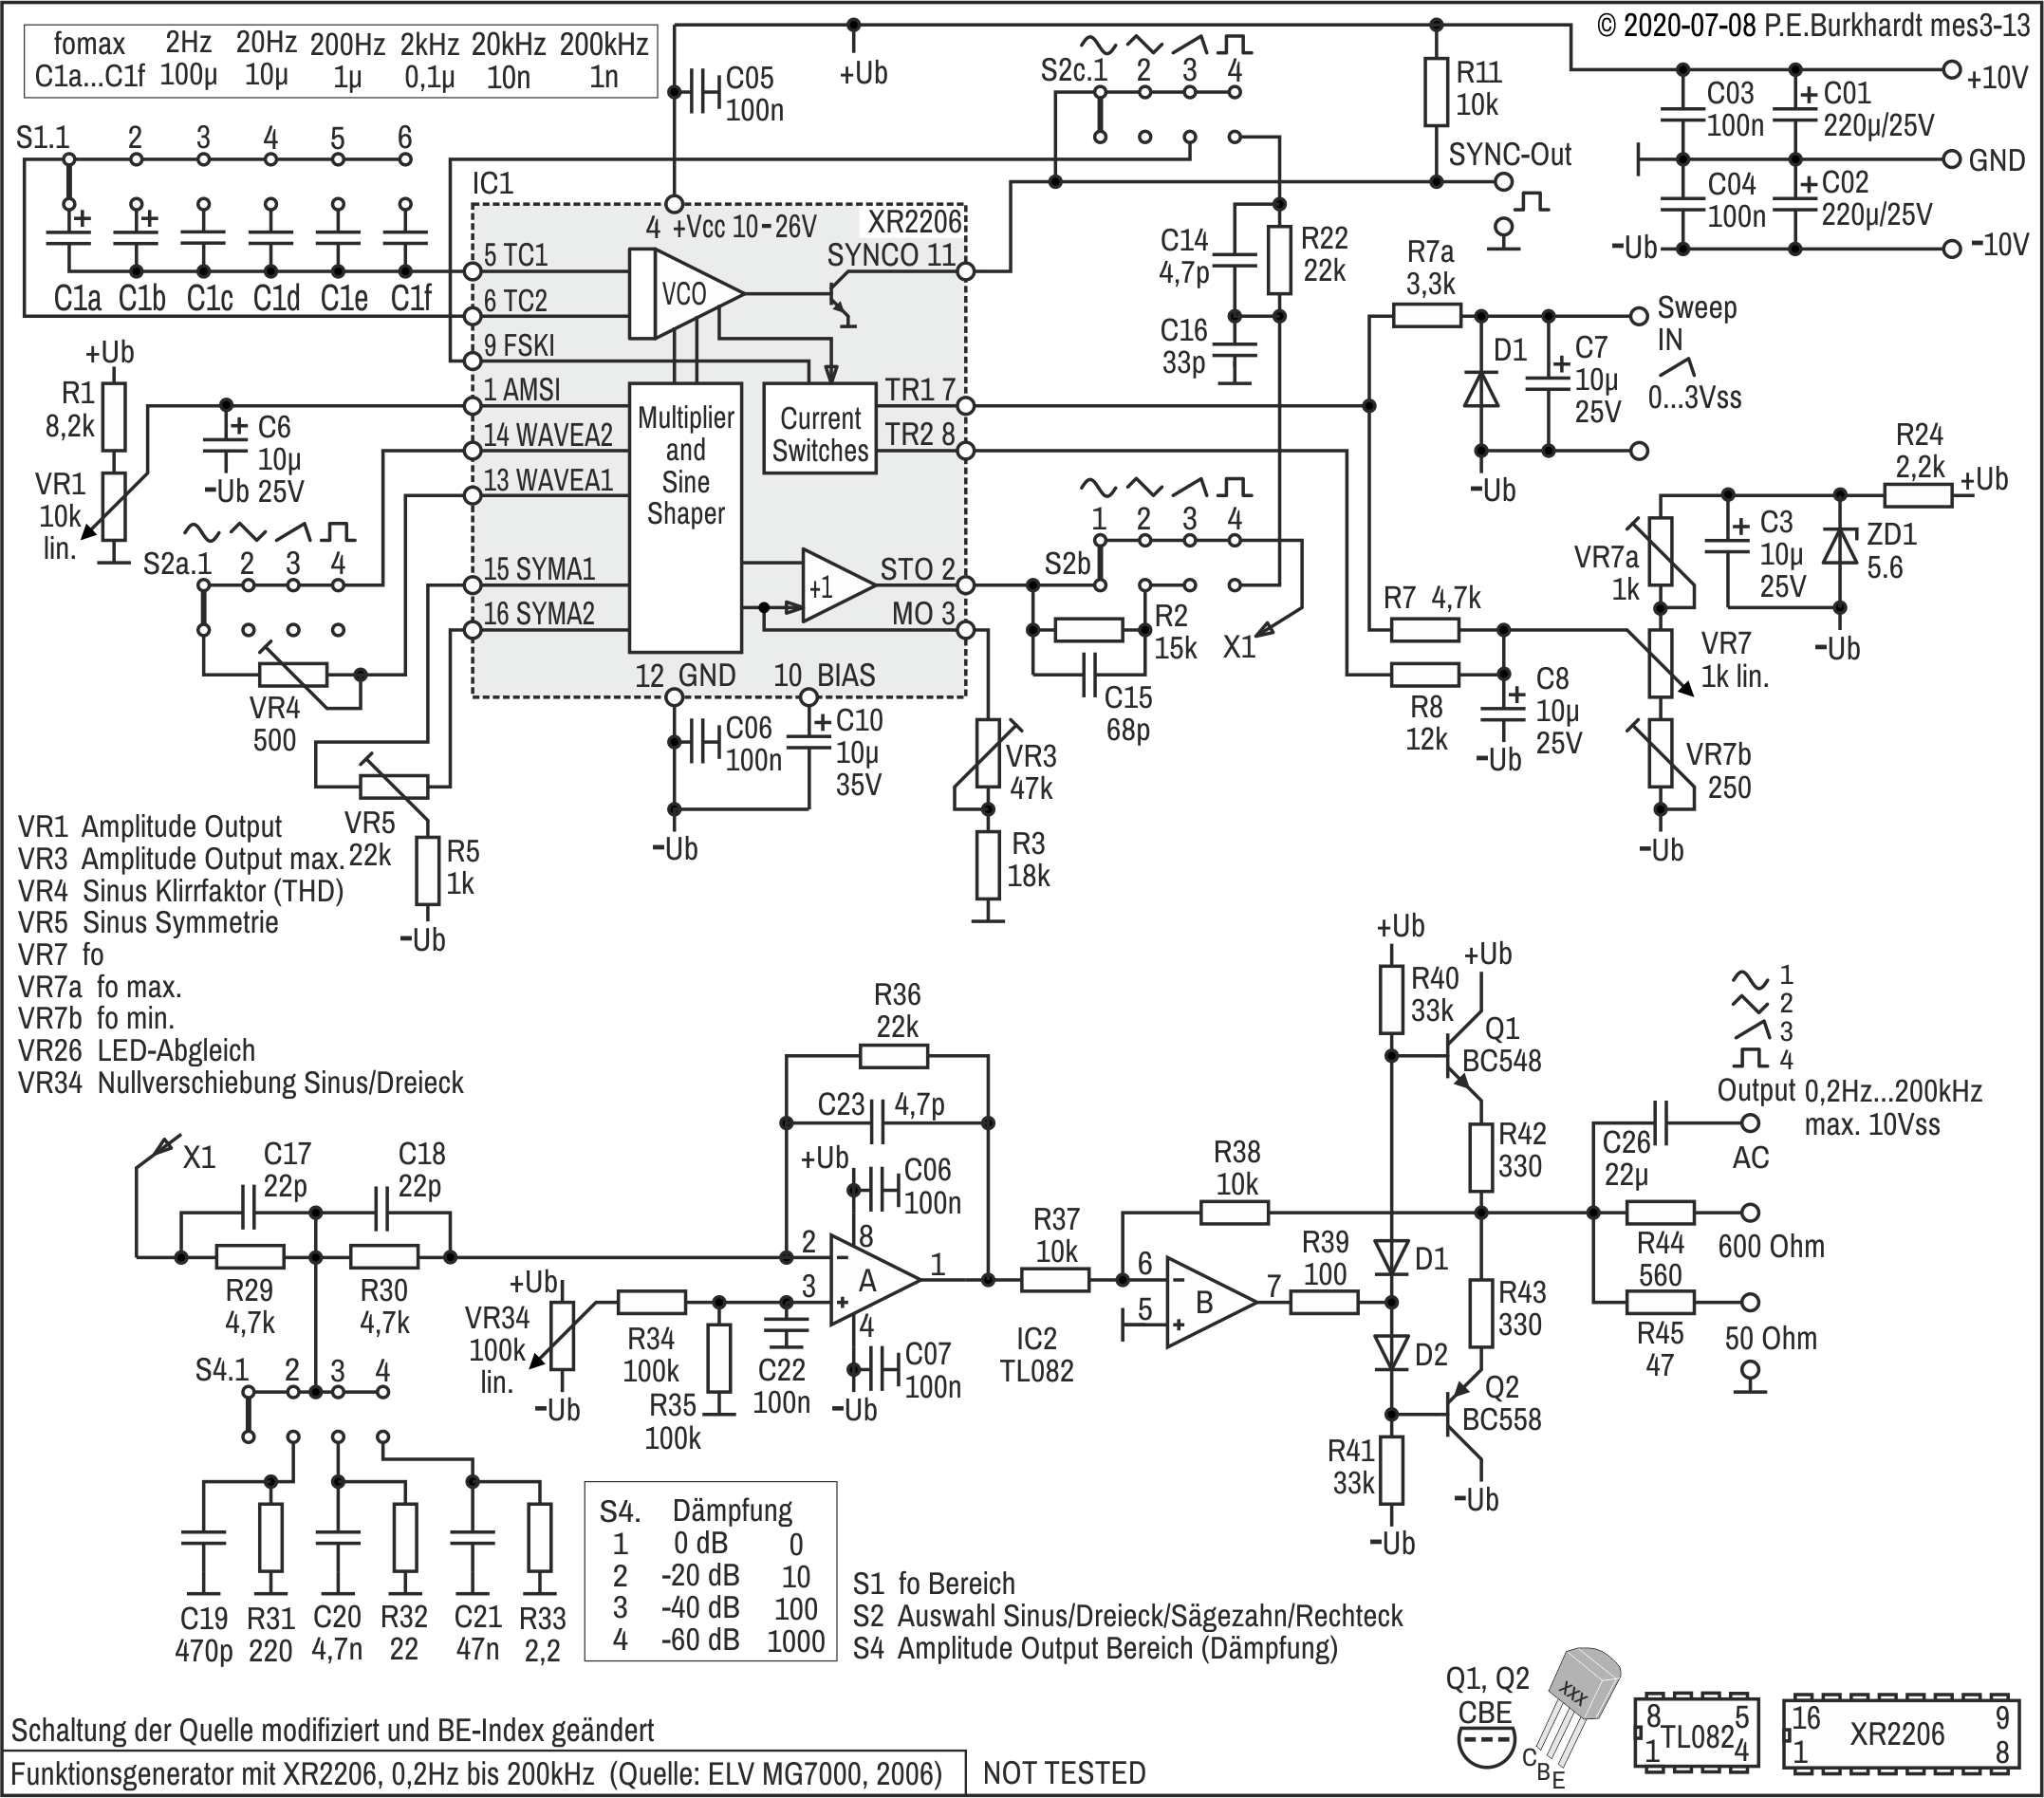 Funktionsgenerator XR2206 nach ELV MG7000